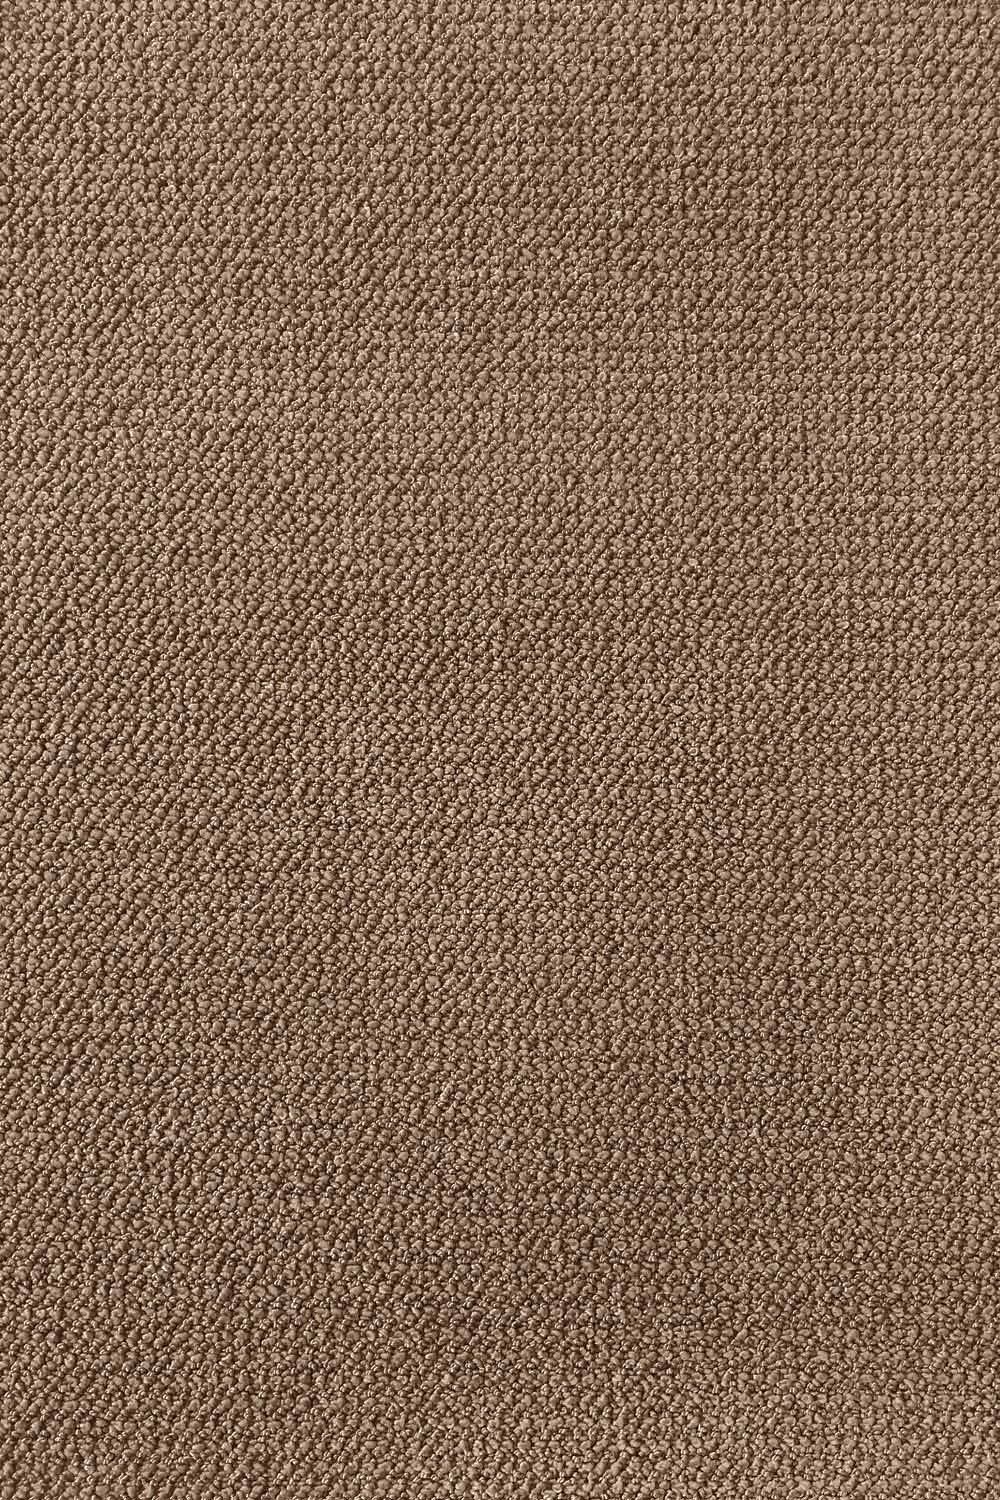  Metrážový koberec Corvino 34 400 cm